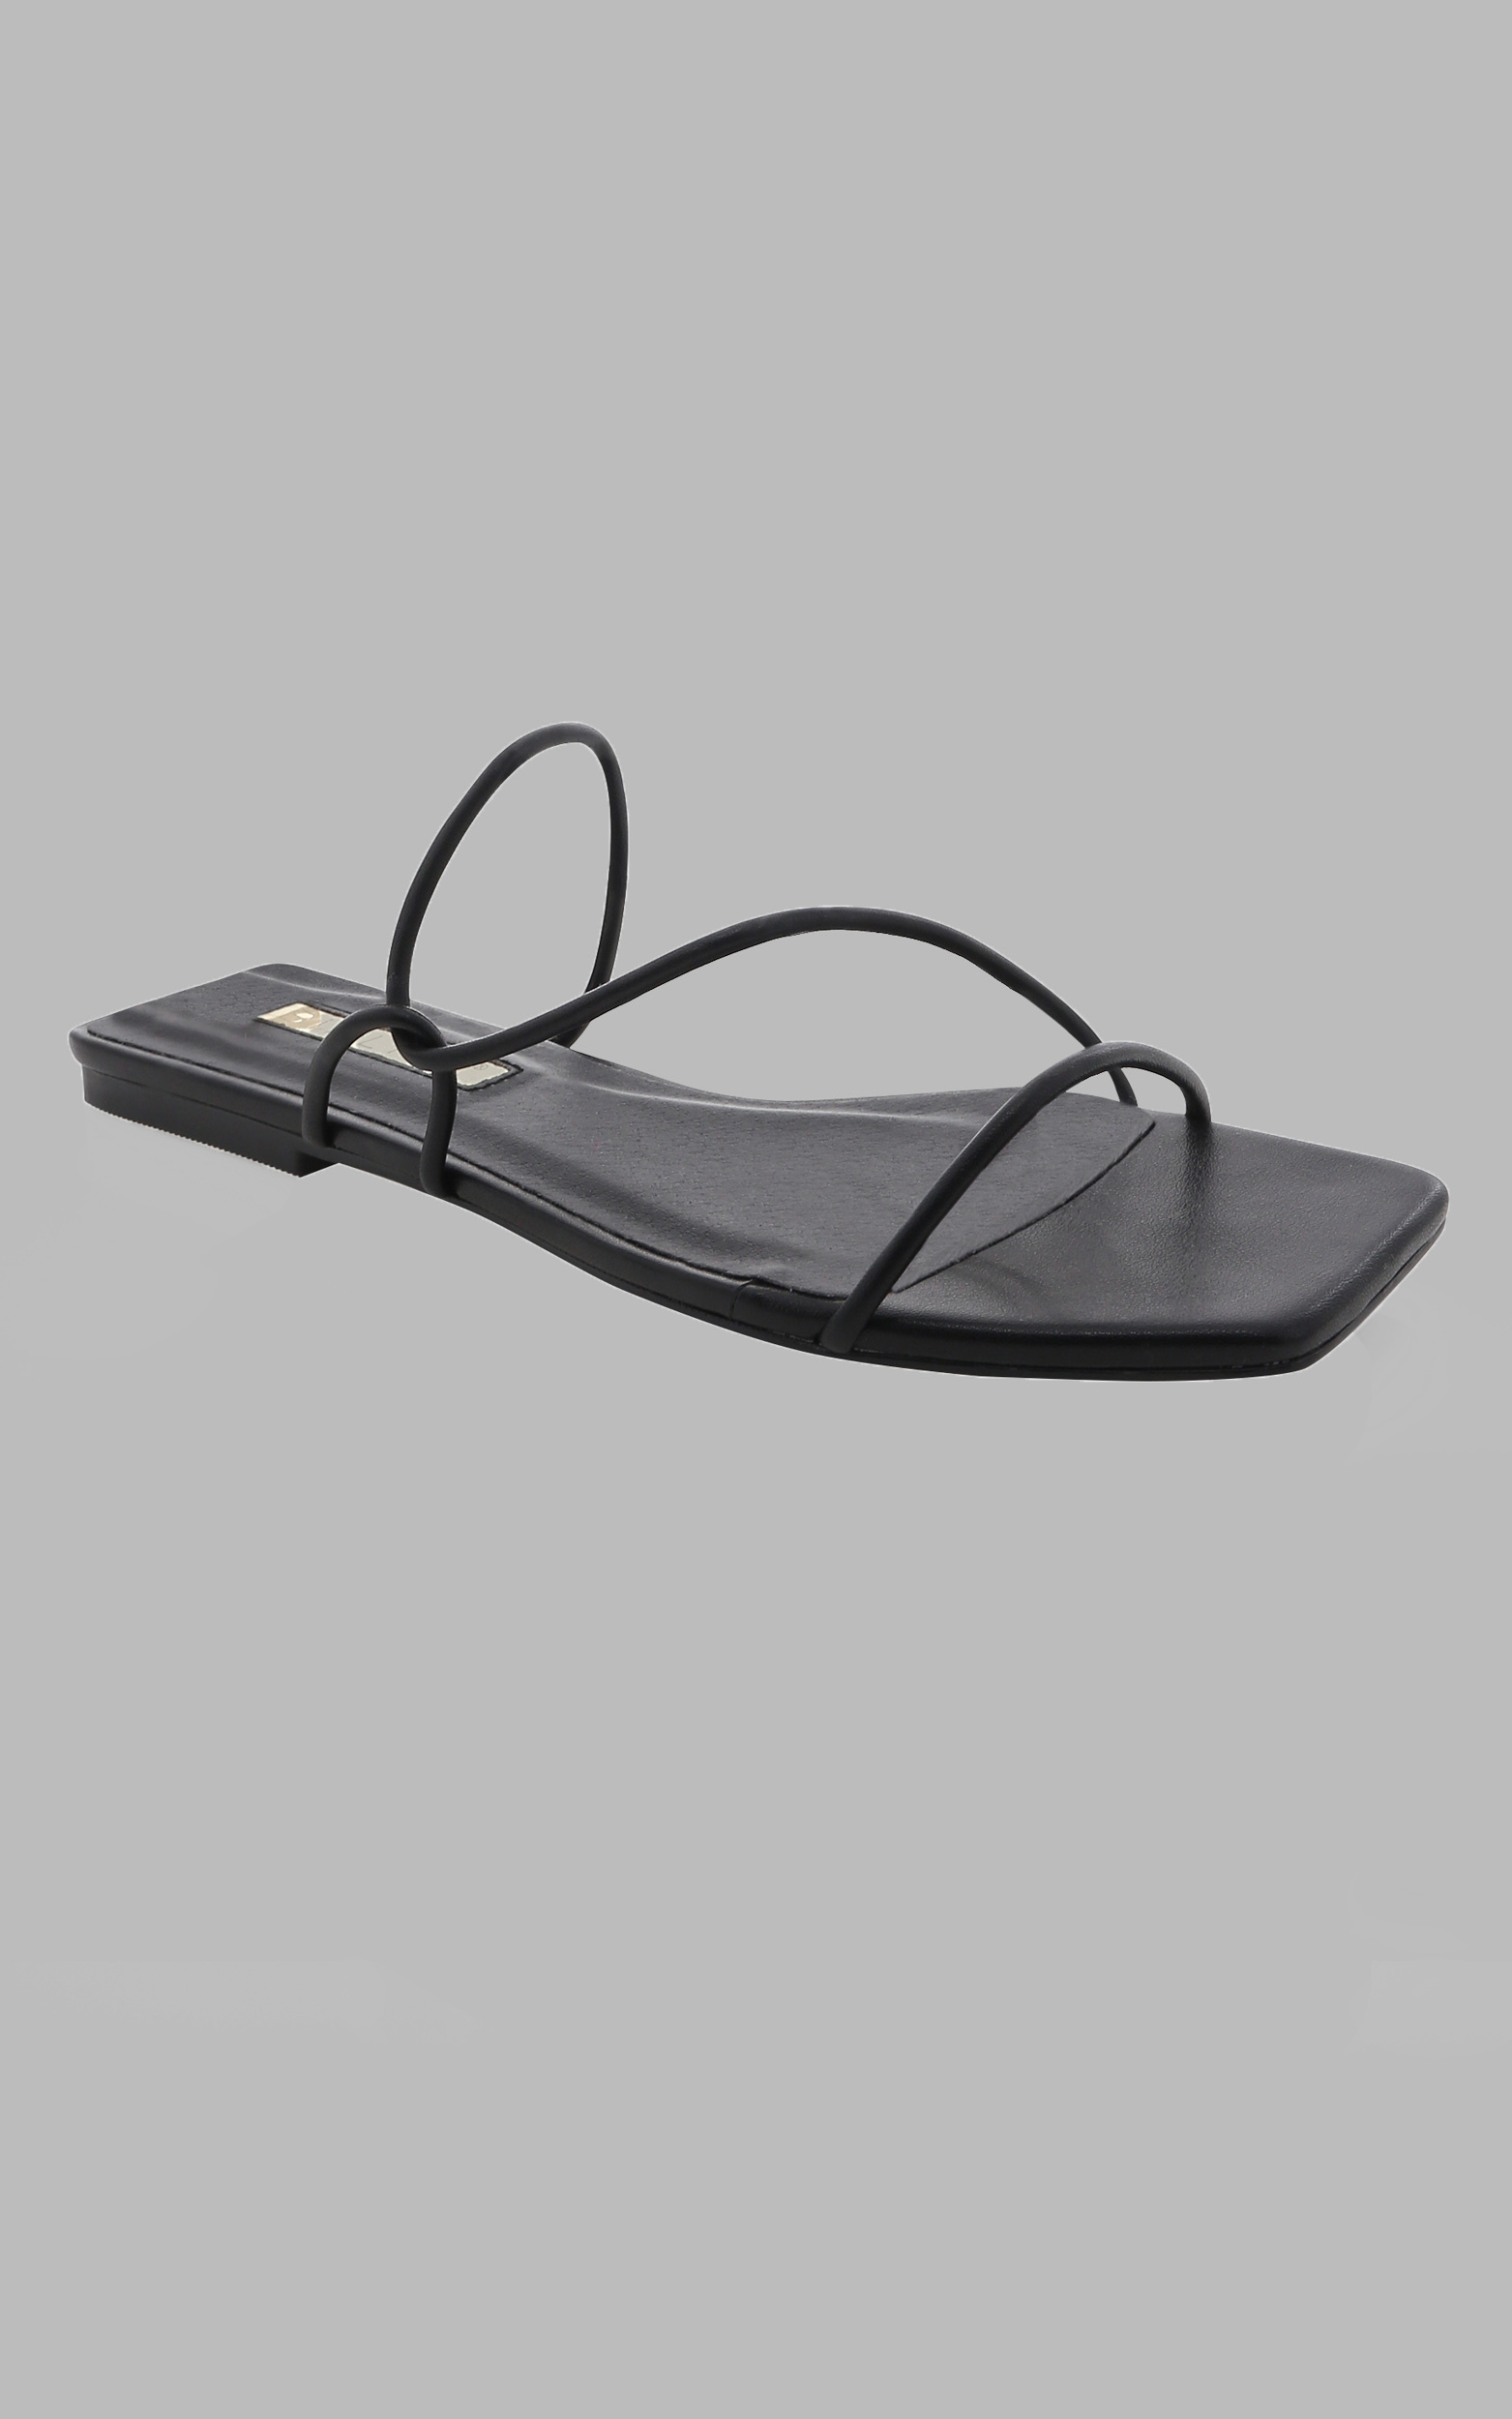 Billini - Fraya Sandals in Black - 05, BLK1, hi-res image number null